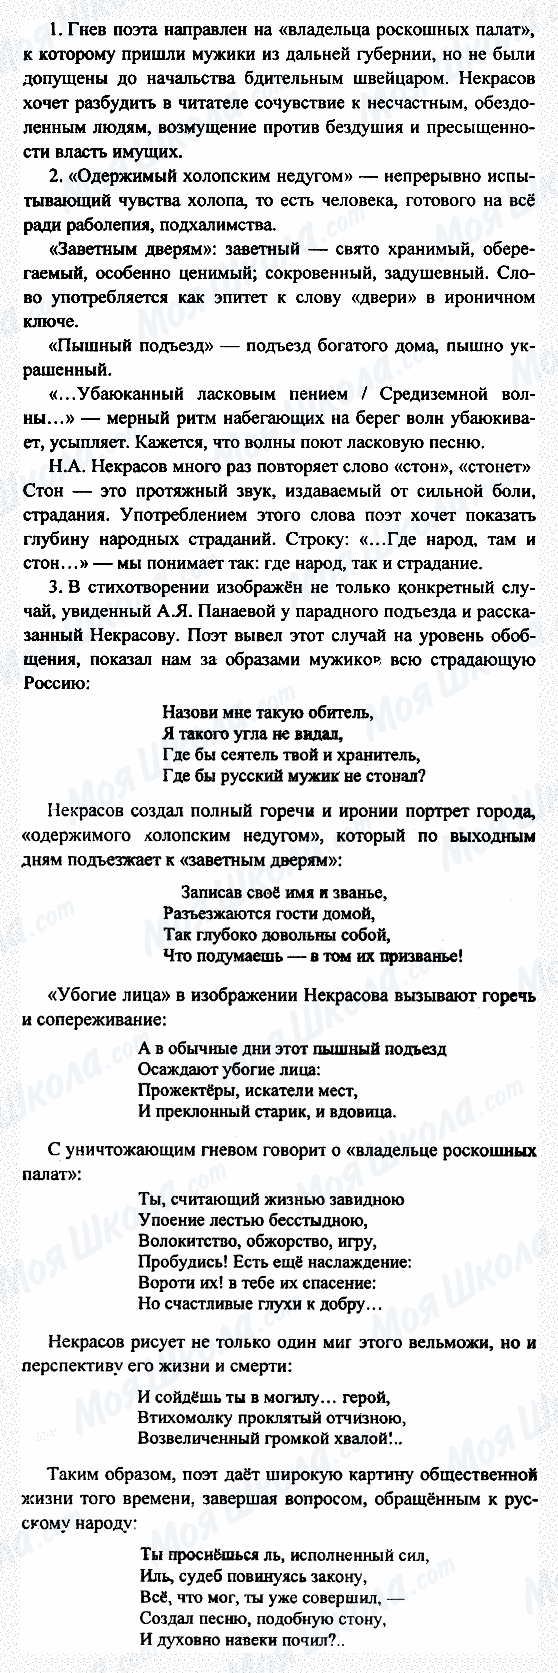 ГДЗ Русская литература 7 класс страница 1-2-3